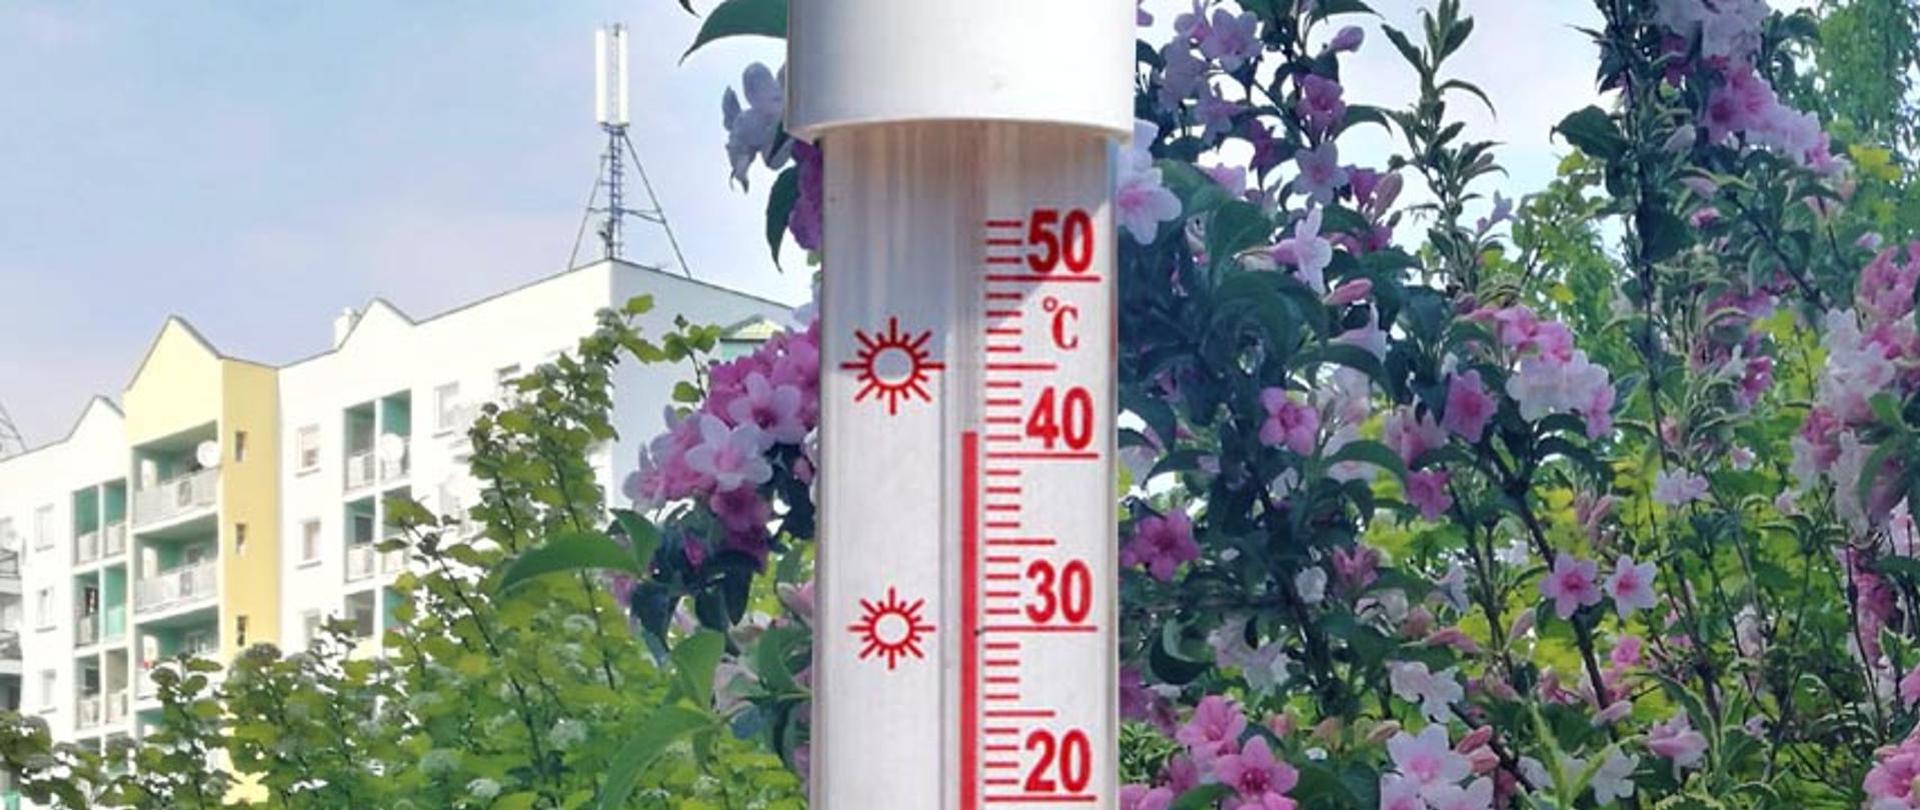 Zdjęcie przedstawia termometr z temperaturą 41 stopni Celsjusza na tle budynku i kwiatów na drzewach